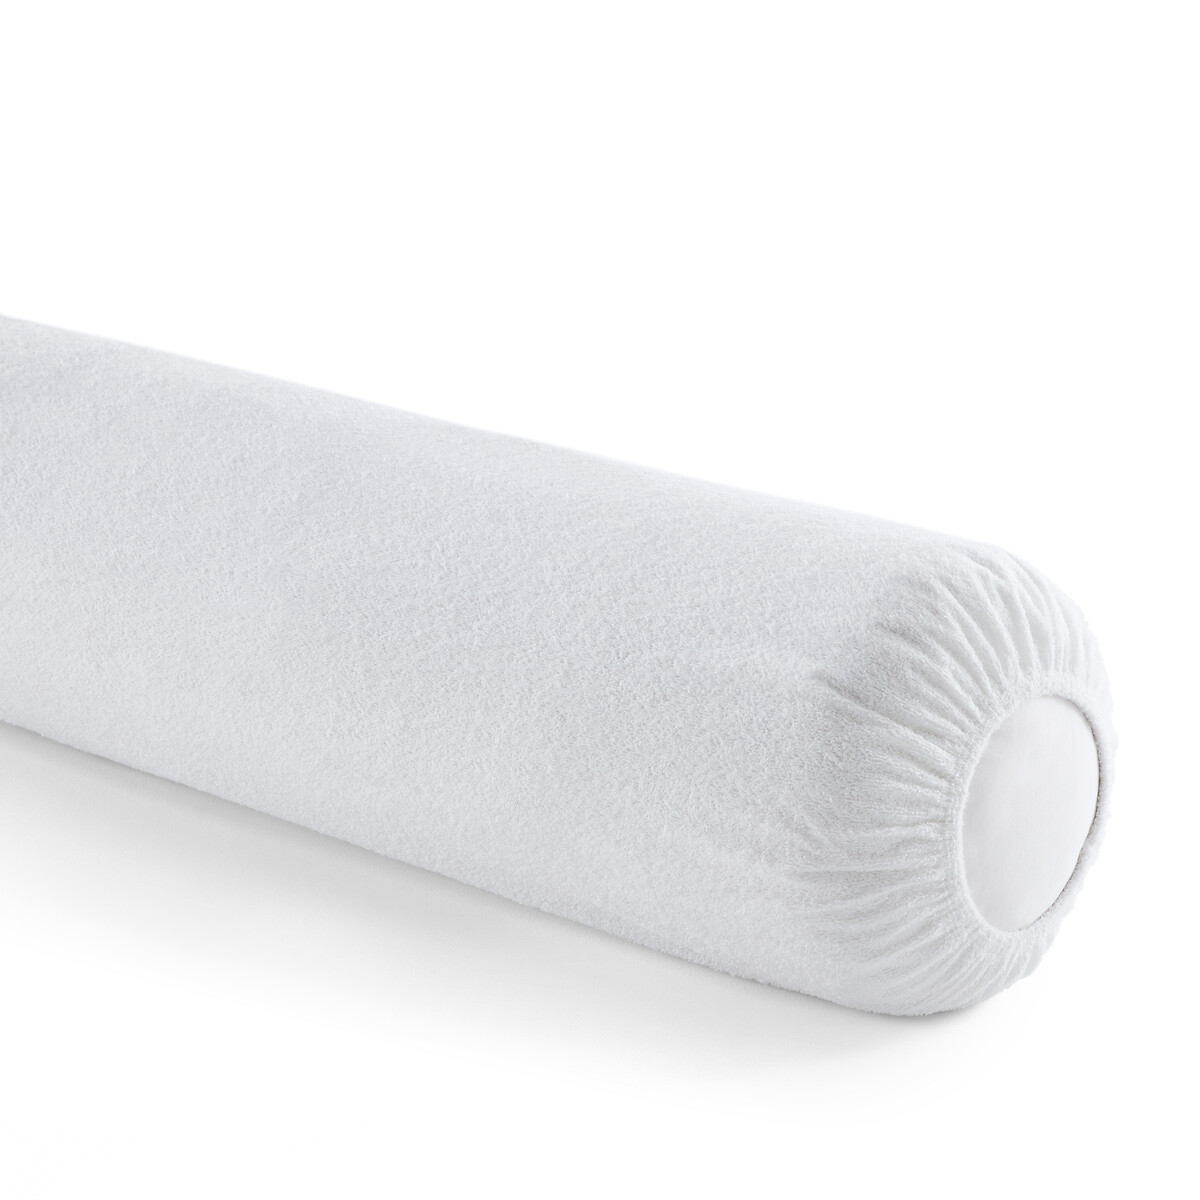 Чехол защитный на подушку-валик с обработкой против клещей длина: 140 см белый одеяло 4 saisons с обработкой от клещей 140 x 200 см белый